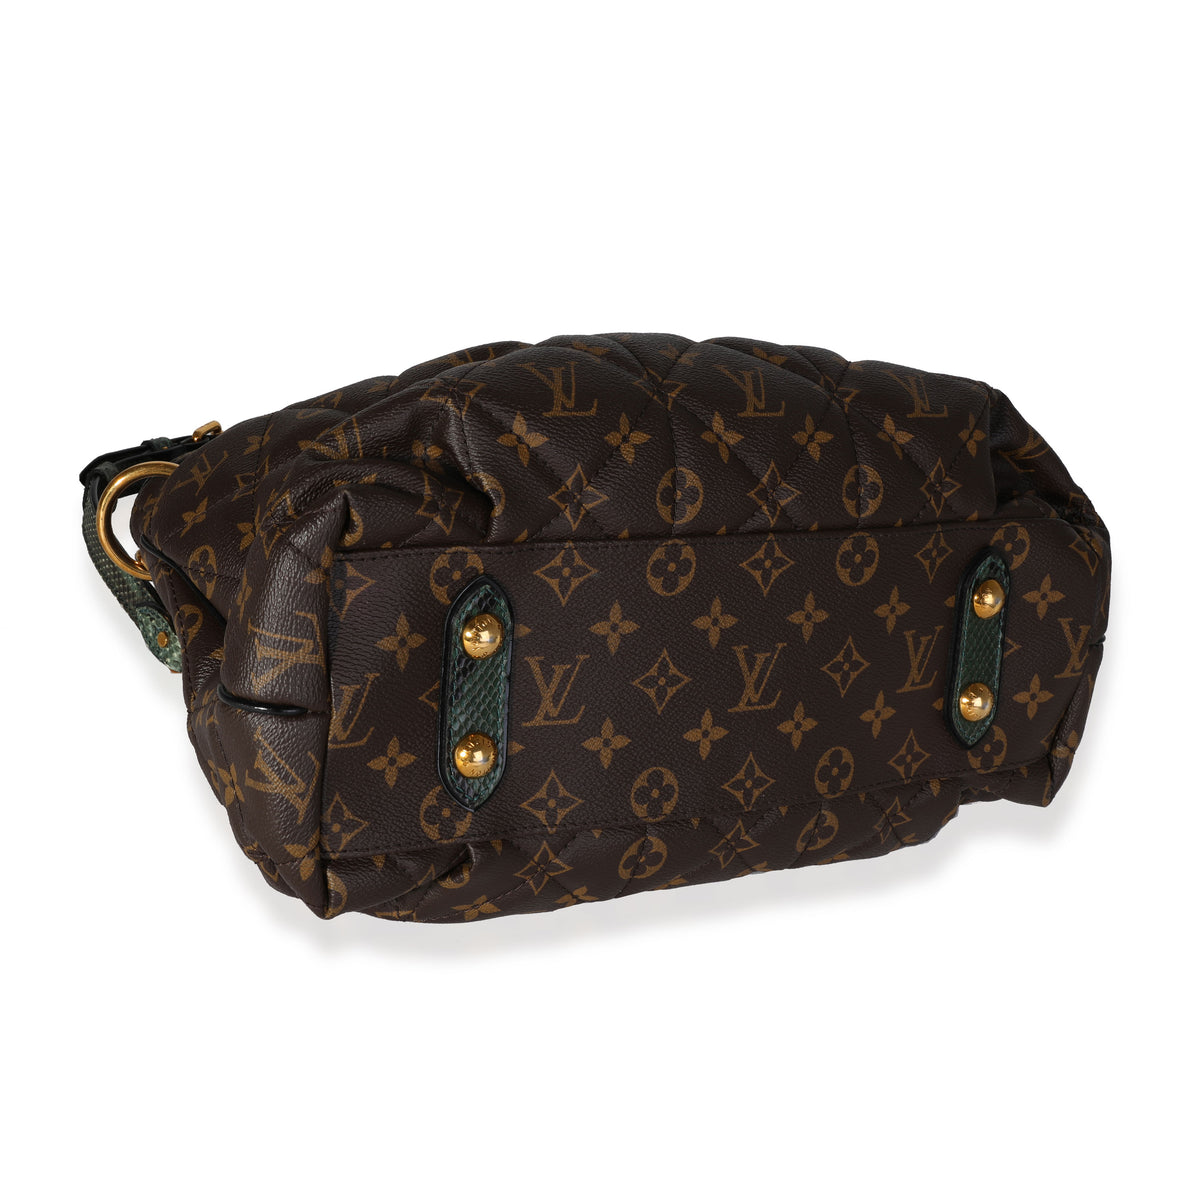 Louis Vuitton Authenticated Etoile Handbag